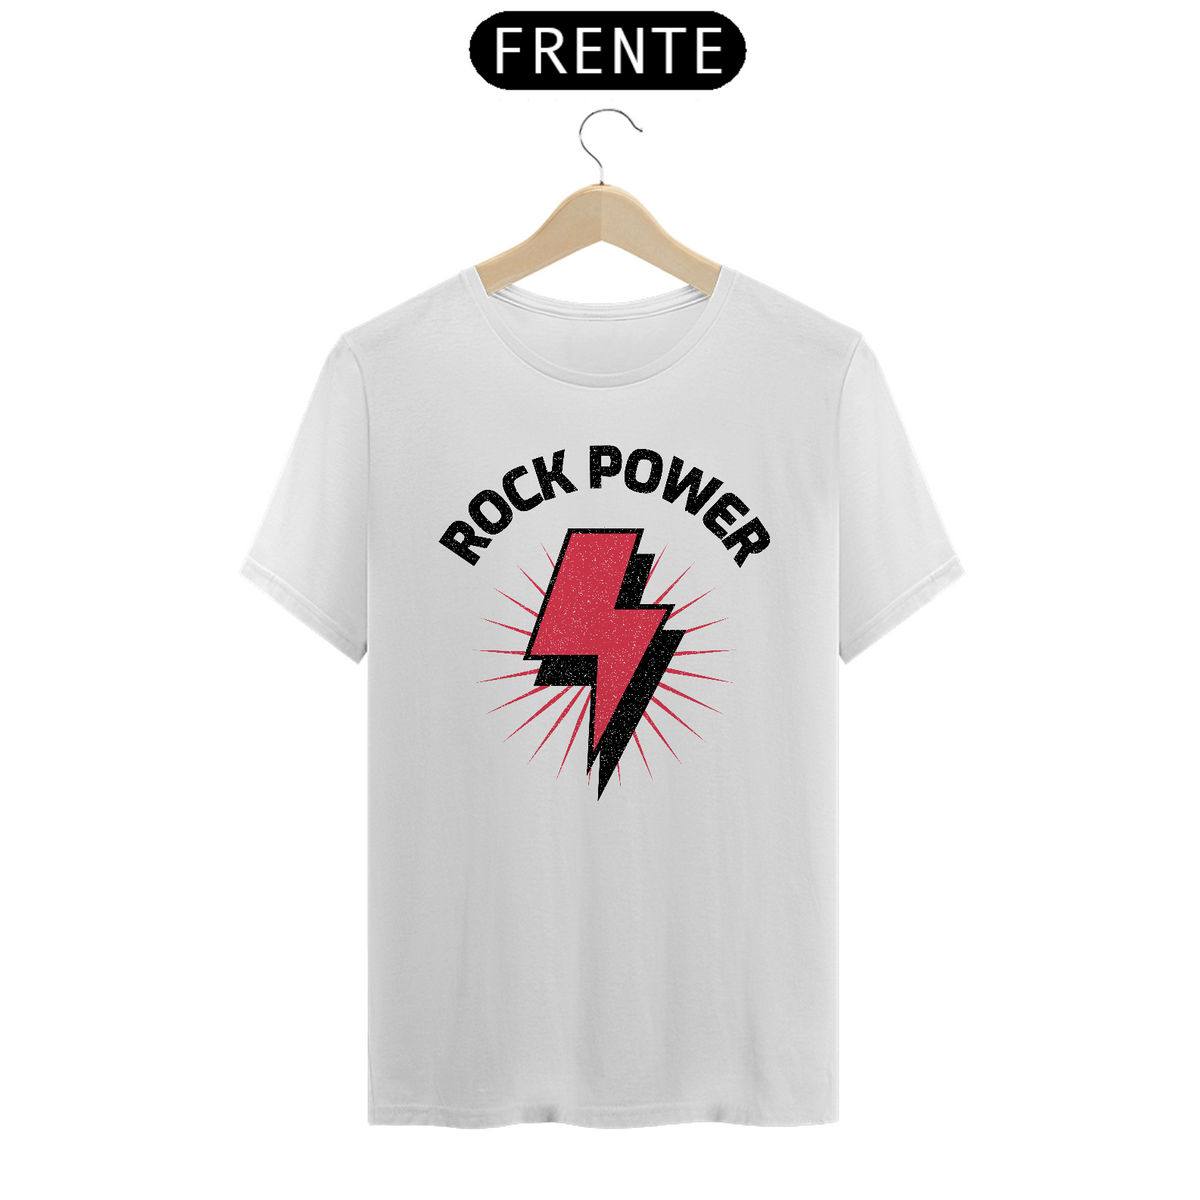 Nome do produto: Rock Power